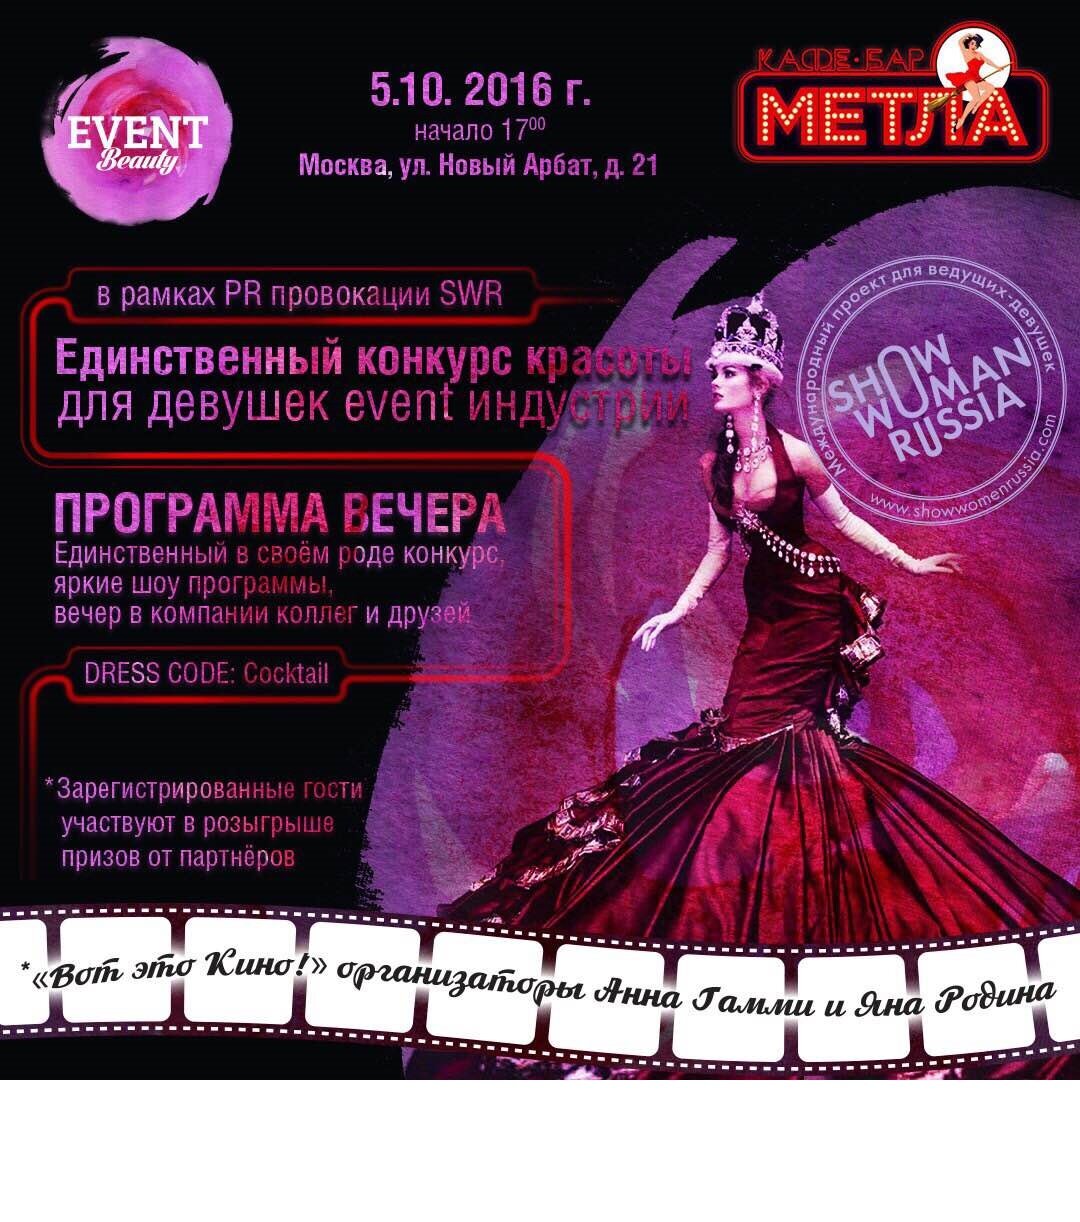 Единственный Всероссийский конкурс красоты для девушек event индустрии «EVENT Beauty»! 